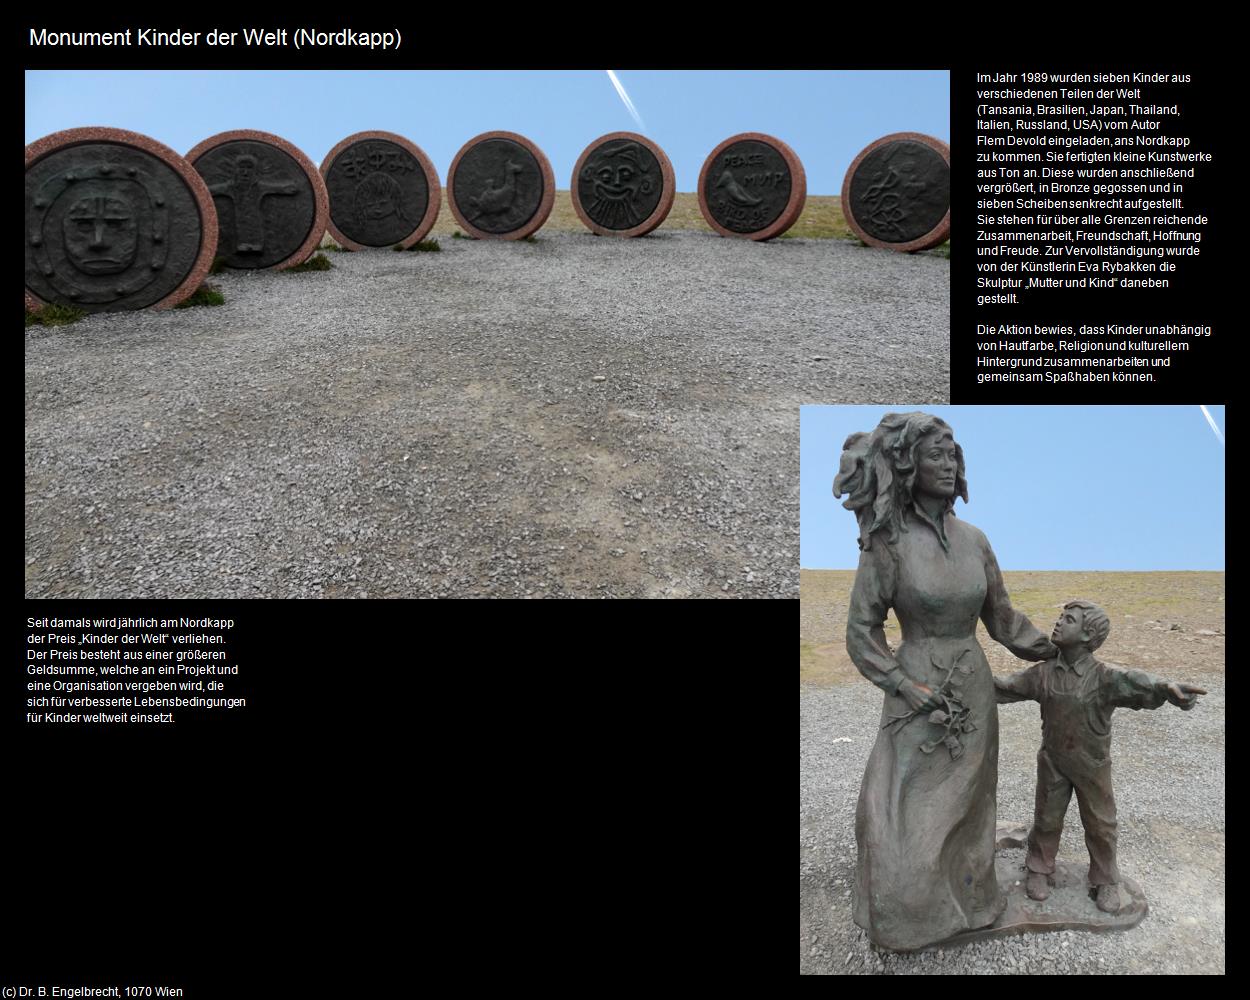 Monument Kinder der Welt (Nordkapp) in Kulturatlas-NORWEGEN